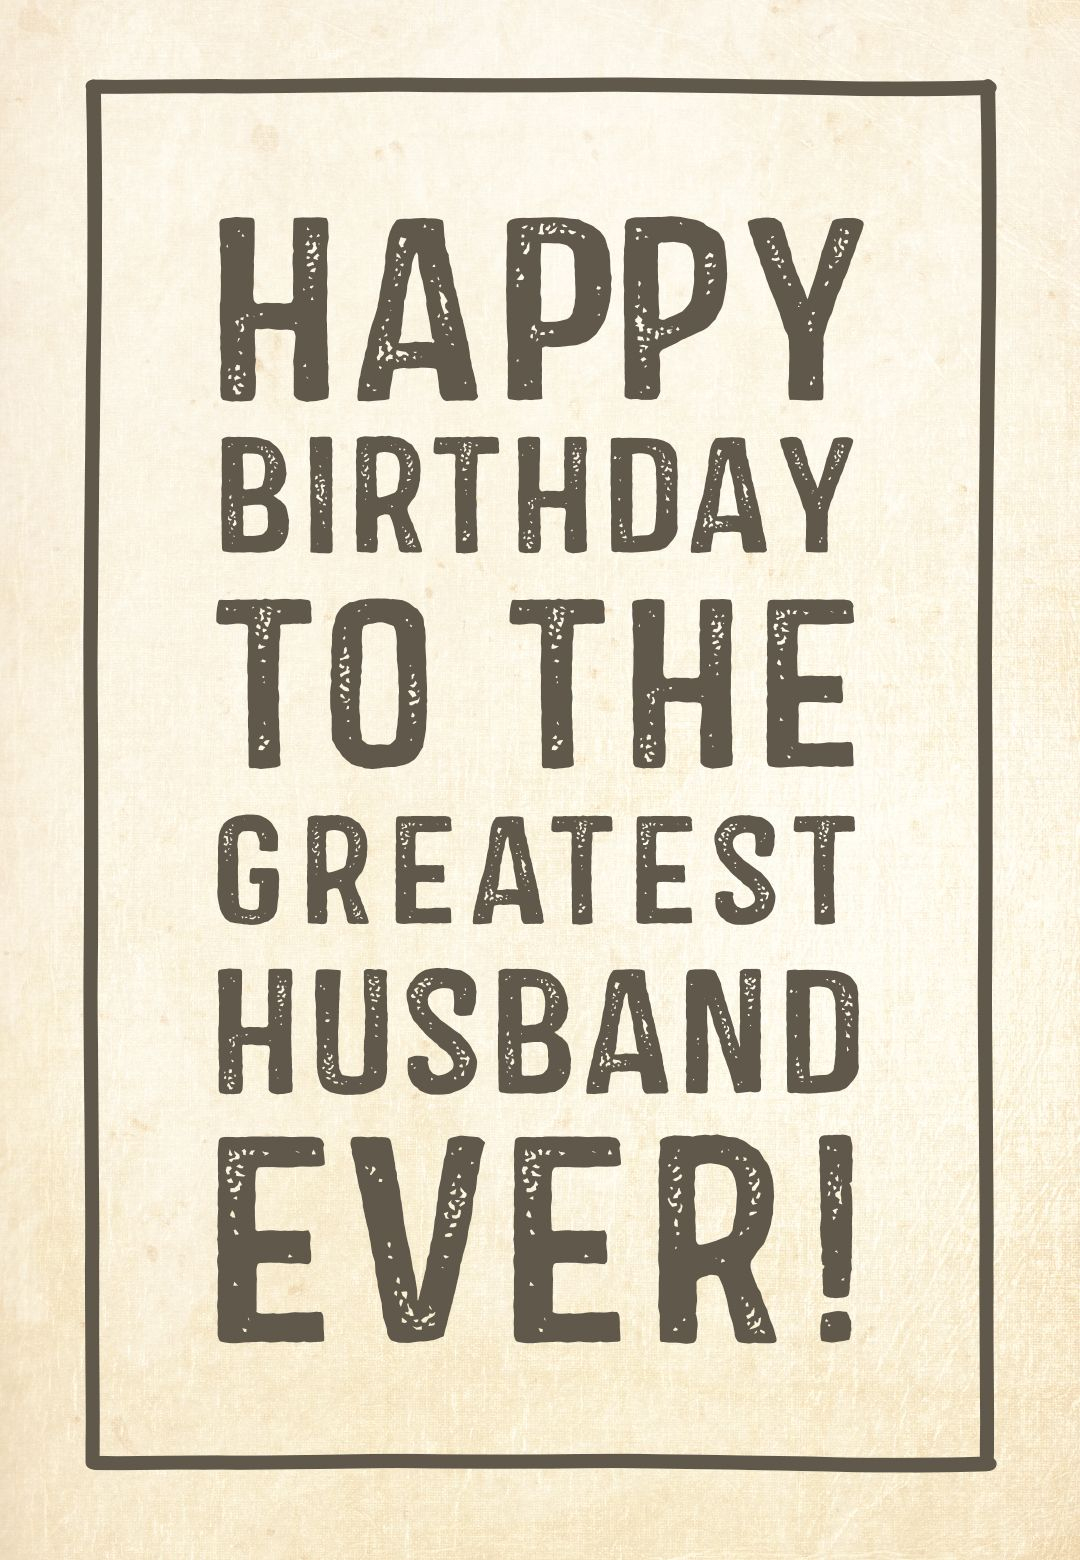 Birthday Cards For Husband Printable Printable Blank World